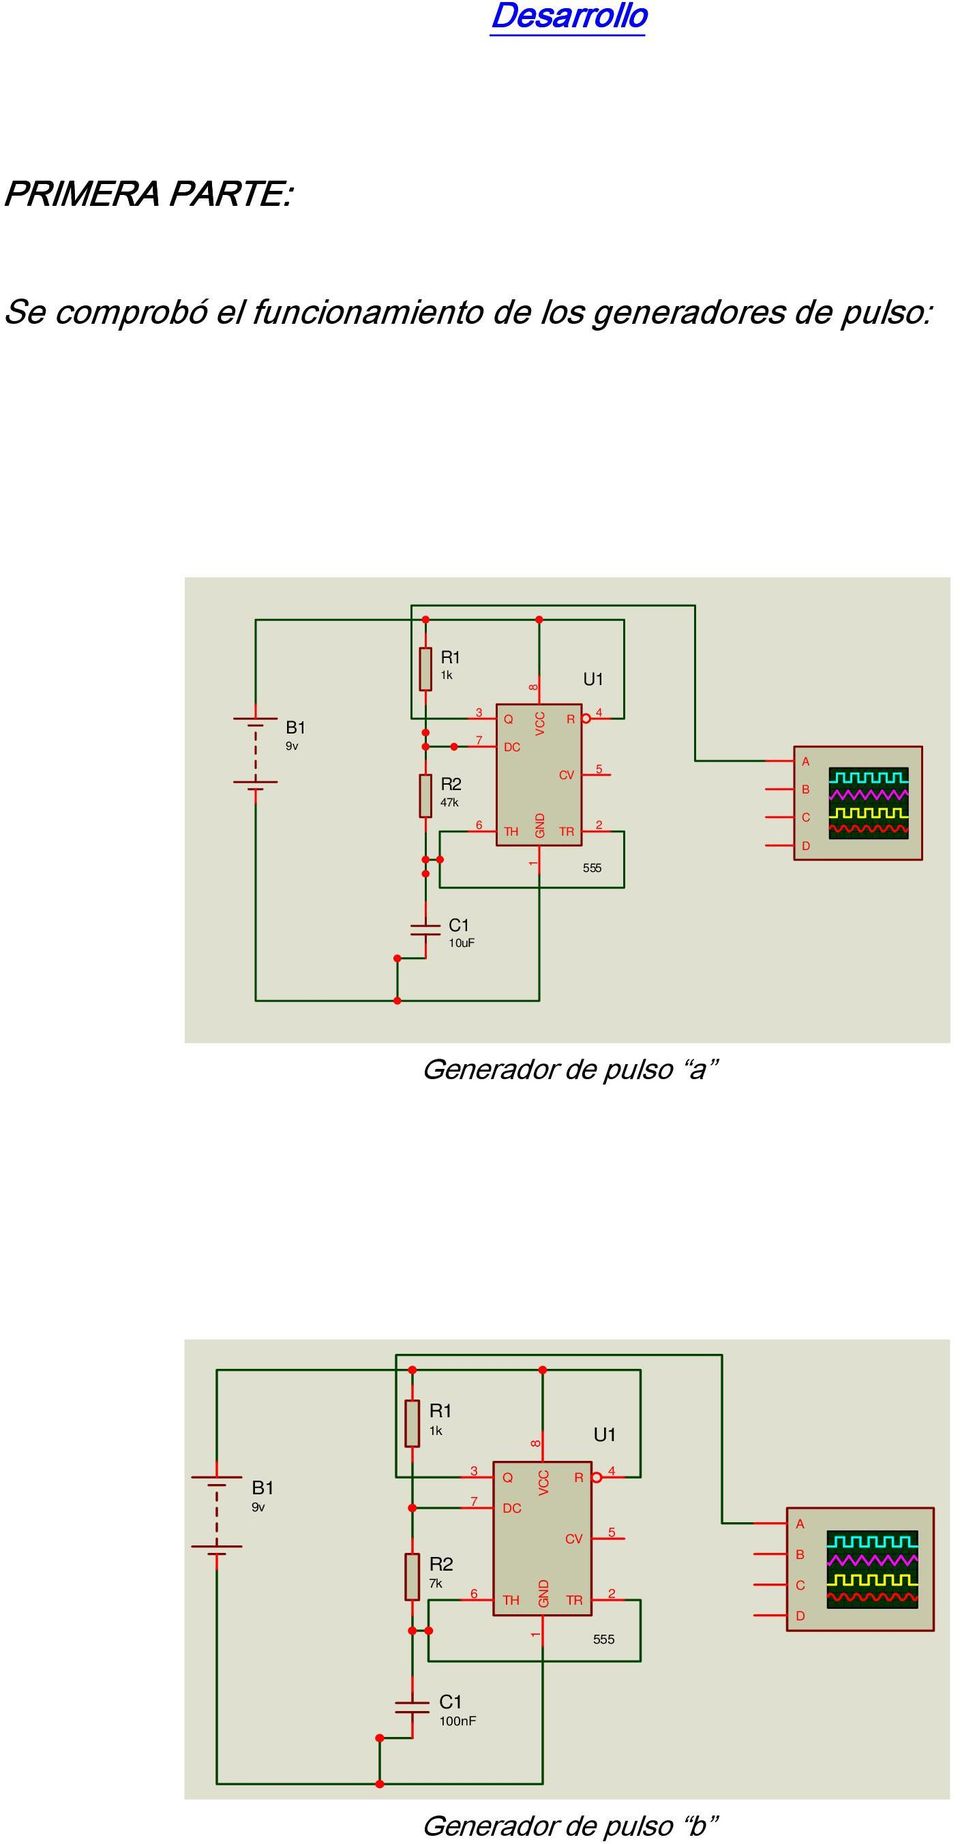 TR 4 5 2 A B C D 1 555 C1 10uF Generador de pulso a R1 1k 8 U1 B1 9v R2